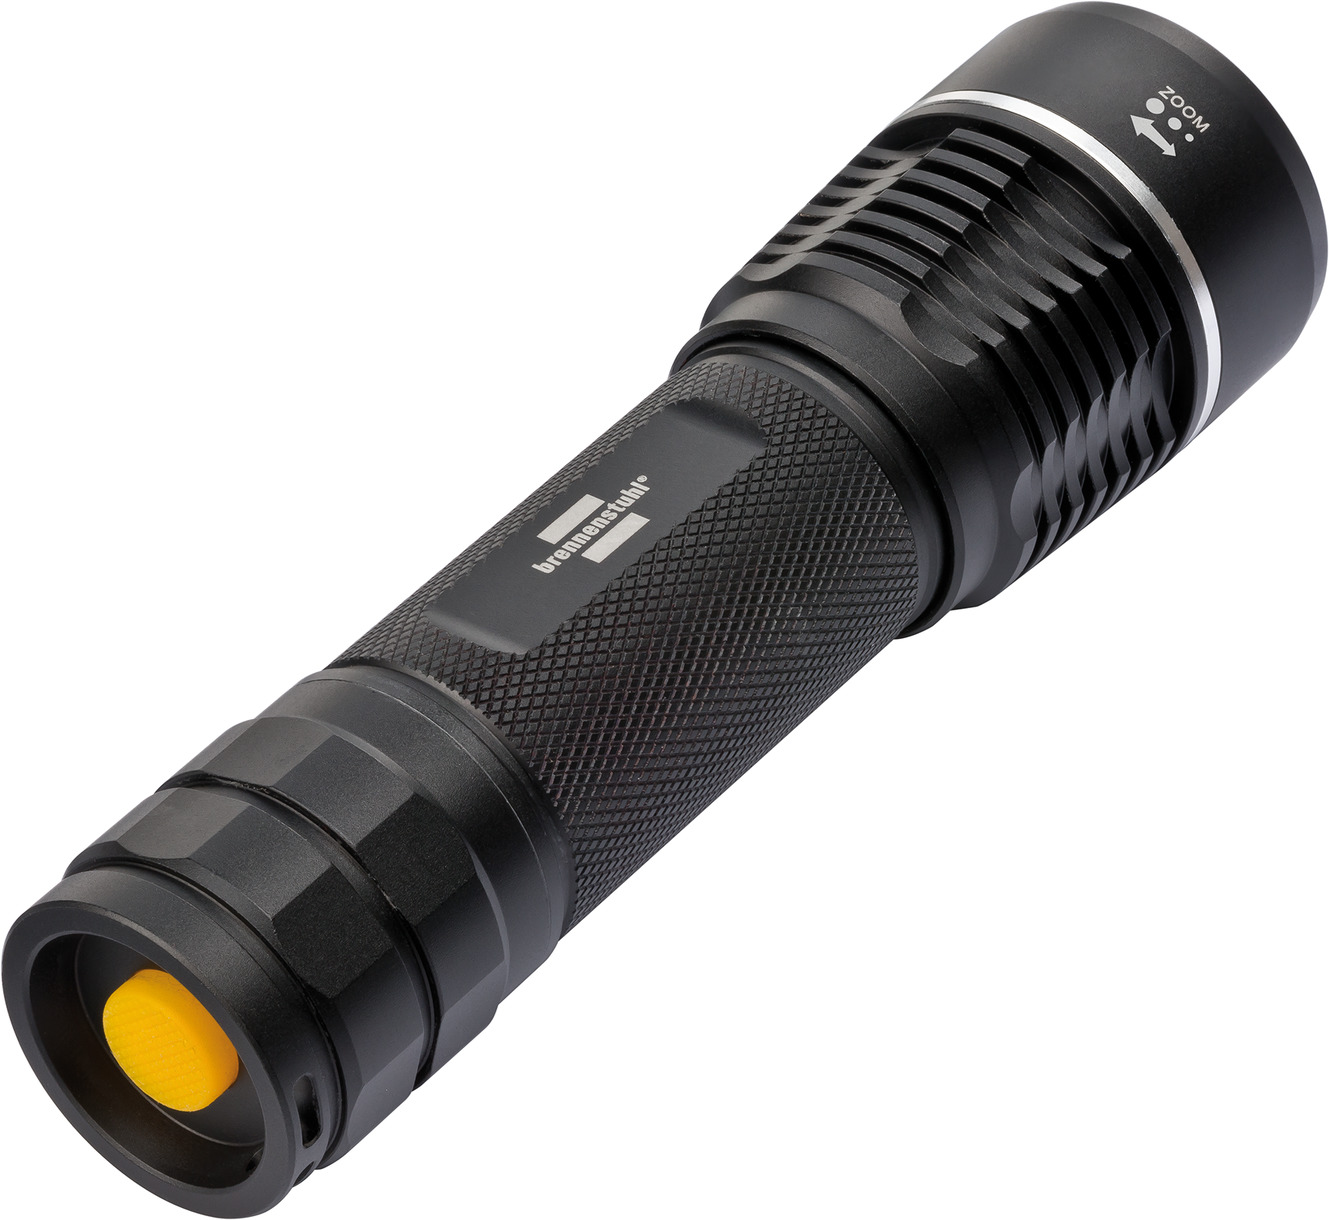 Torche LED LuxPremium Focus / Torche rechargeable avec LED CREE